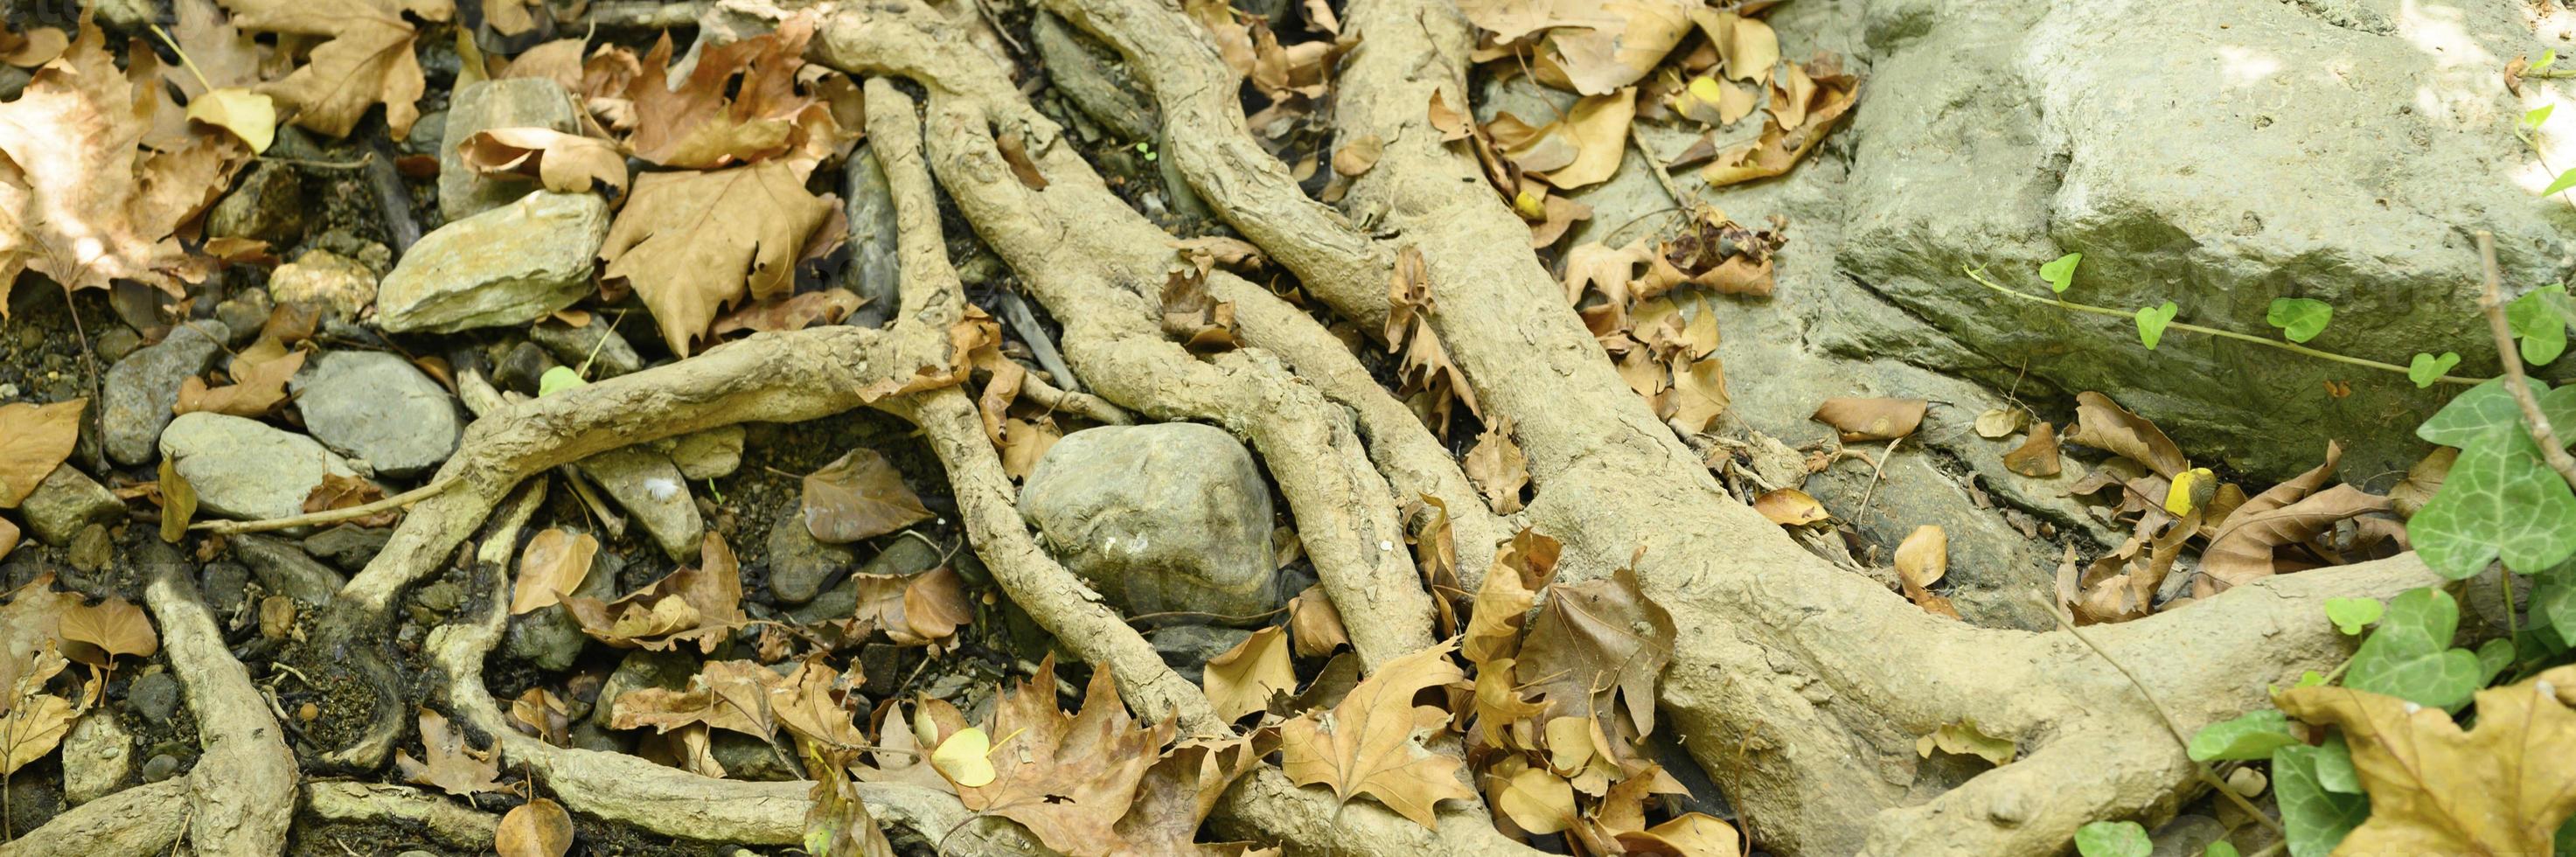 radici nude degli alberi che sporgono dal terreno in scogliere rocciose e foglie cadute in autunno foto